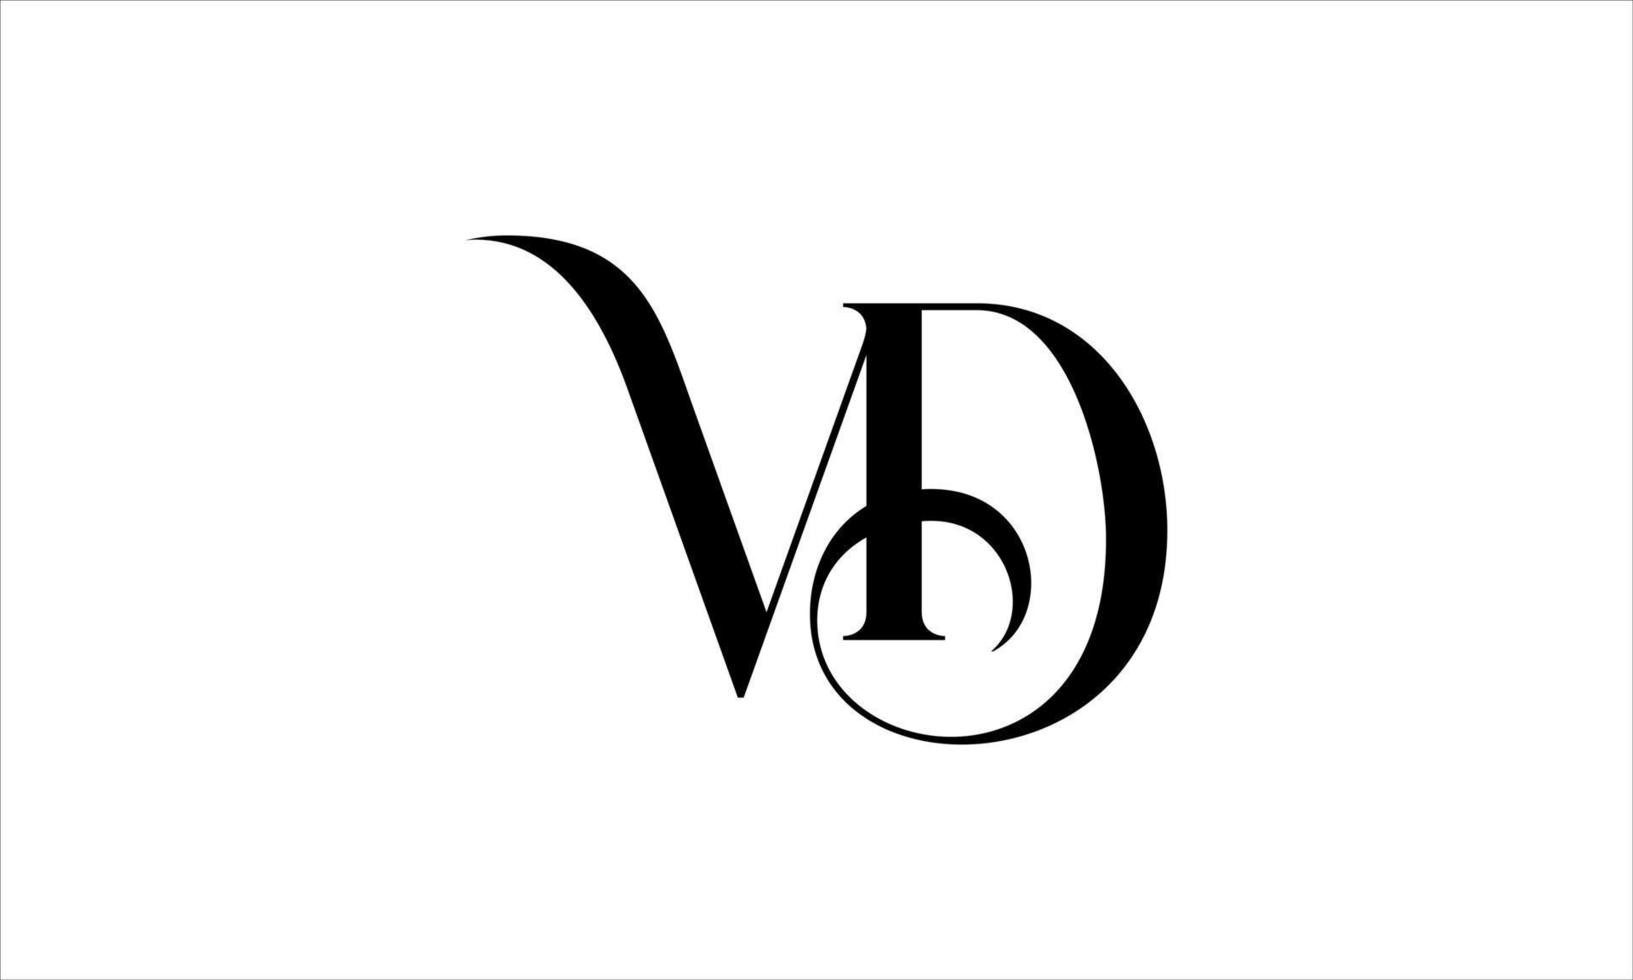 diseño de logotipo vd. vector de diseño de icono de logotipo de letra vd inicial pro vector.